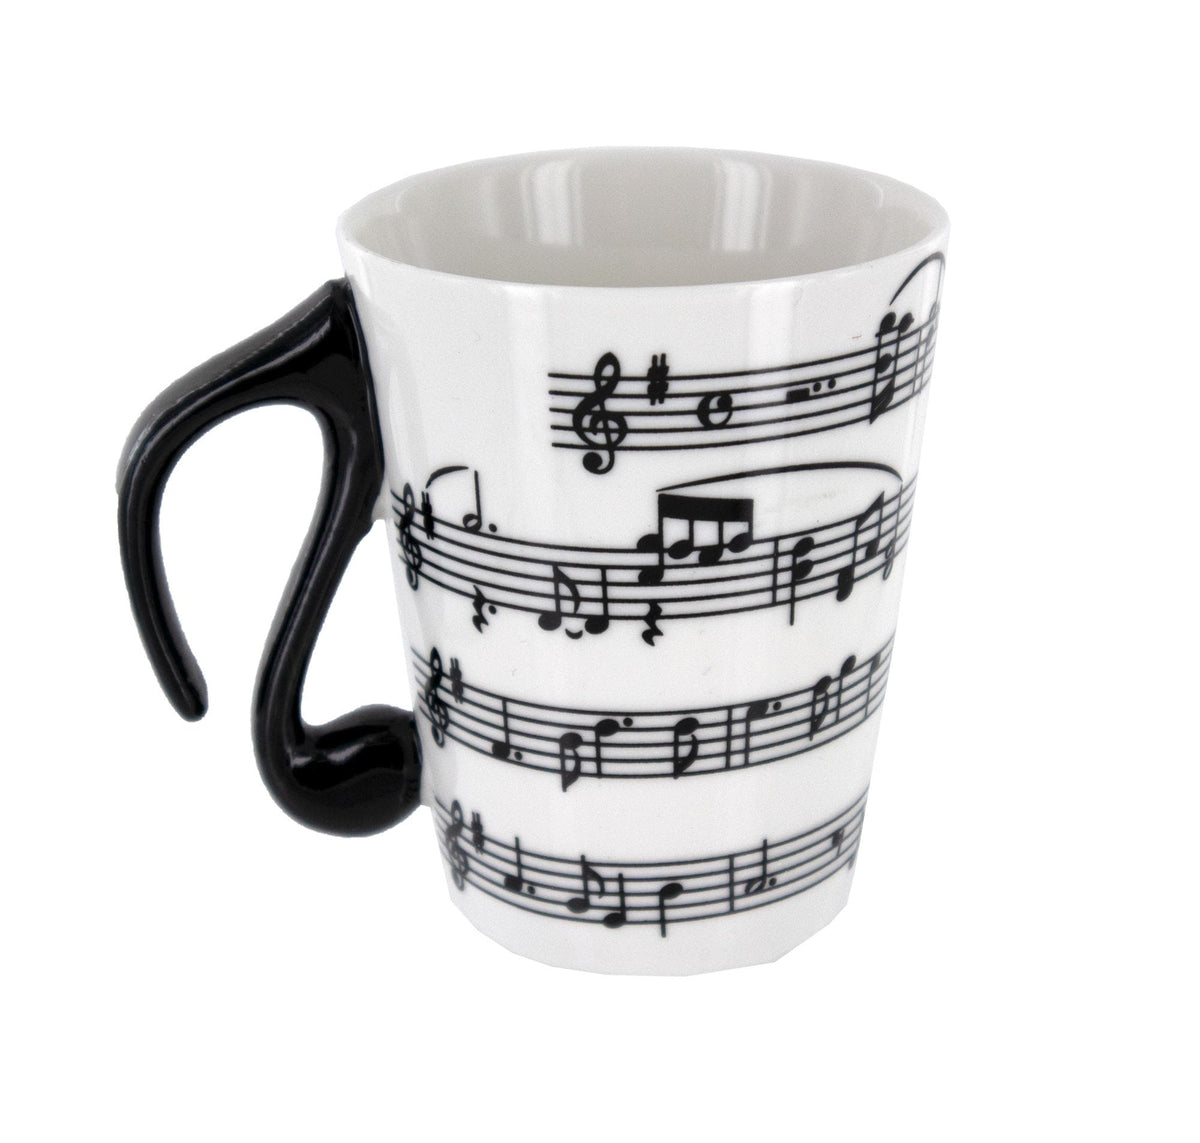 Music Mug - Score